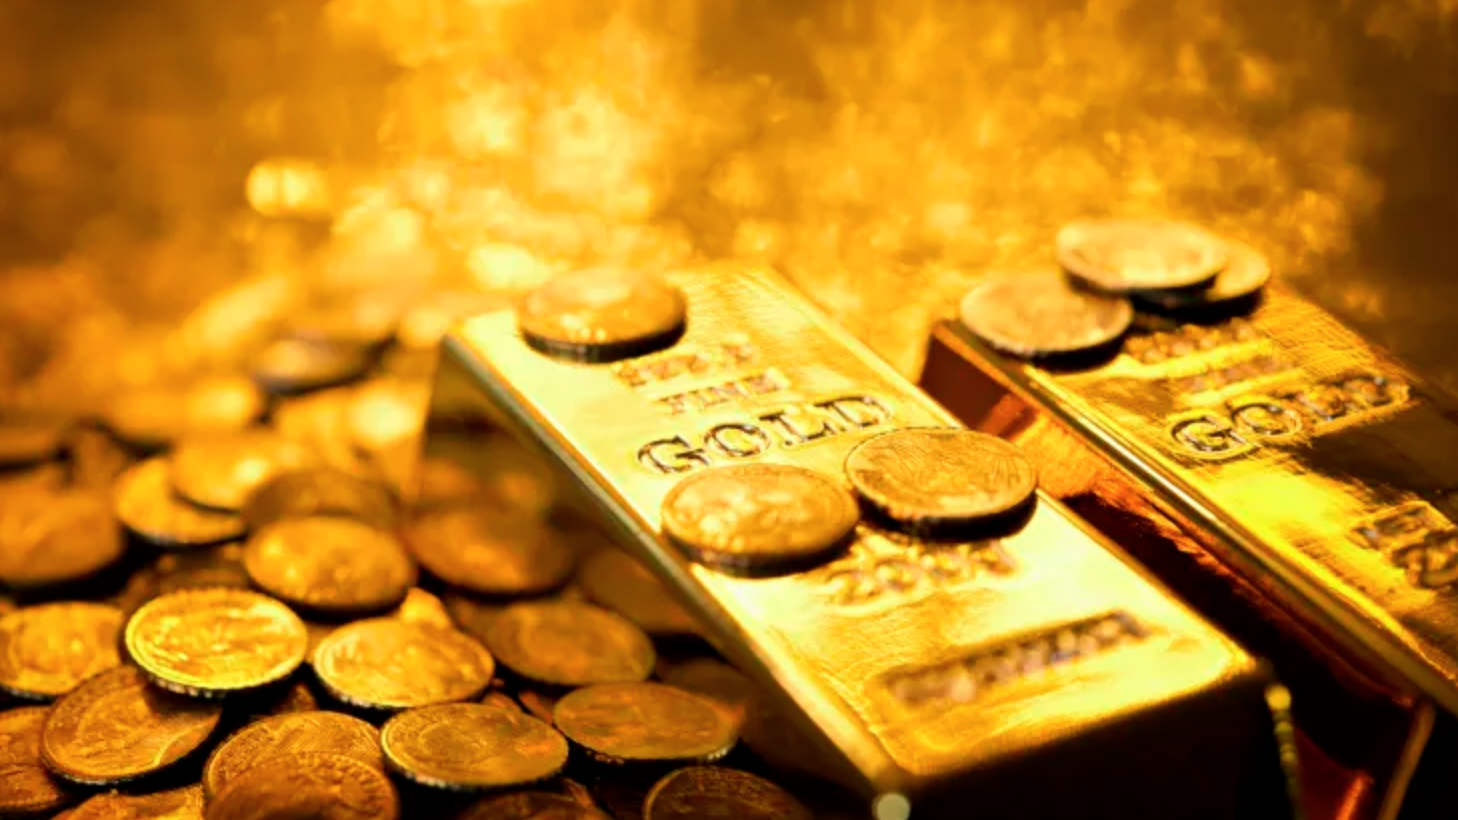 Gần đây, giá vàng đã biến động mạnh, có lúc vàng nhẫn điều chỉnh tăng lên mức 77 triệu đồng một lượng, mức chưa từng có trong lịch sử và giá vàng SJC đã sát mốc 85 triệu đồng một lượng